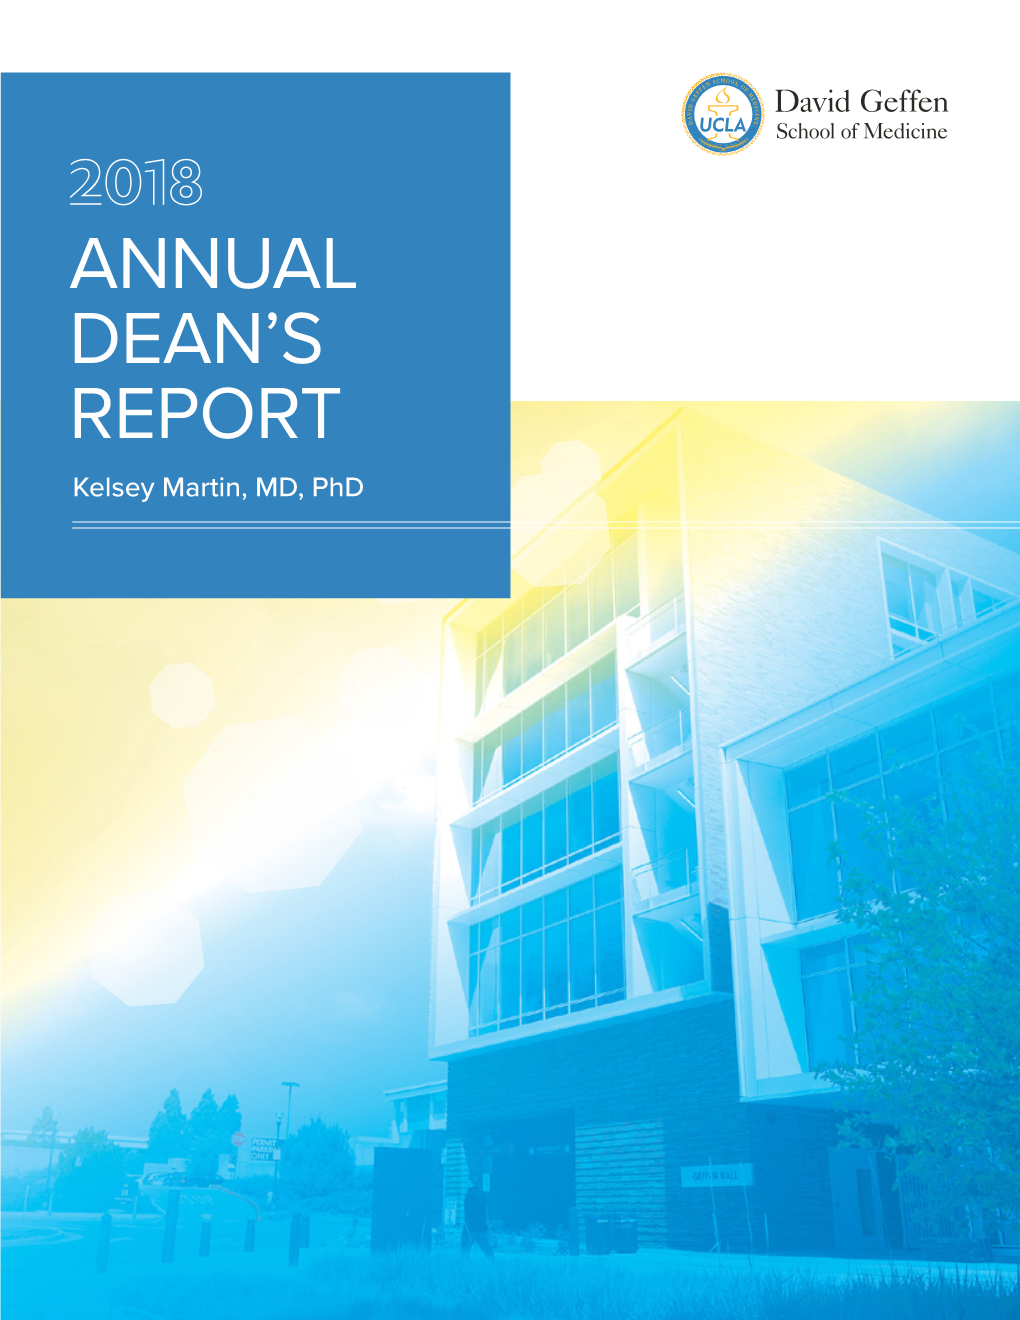 Annual Dean's Report